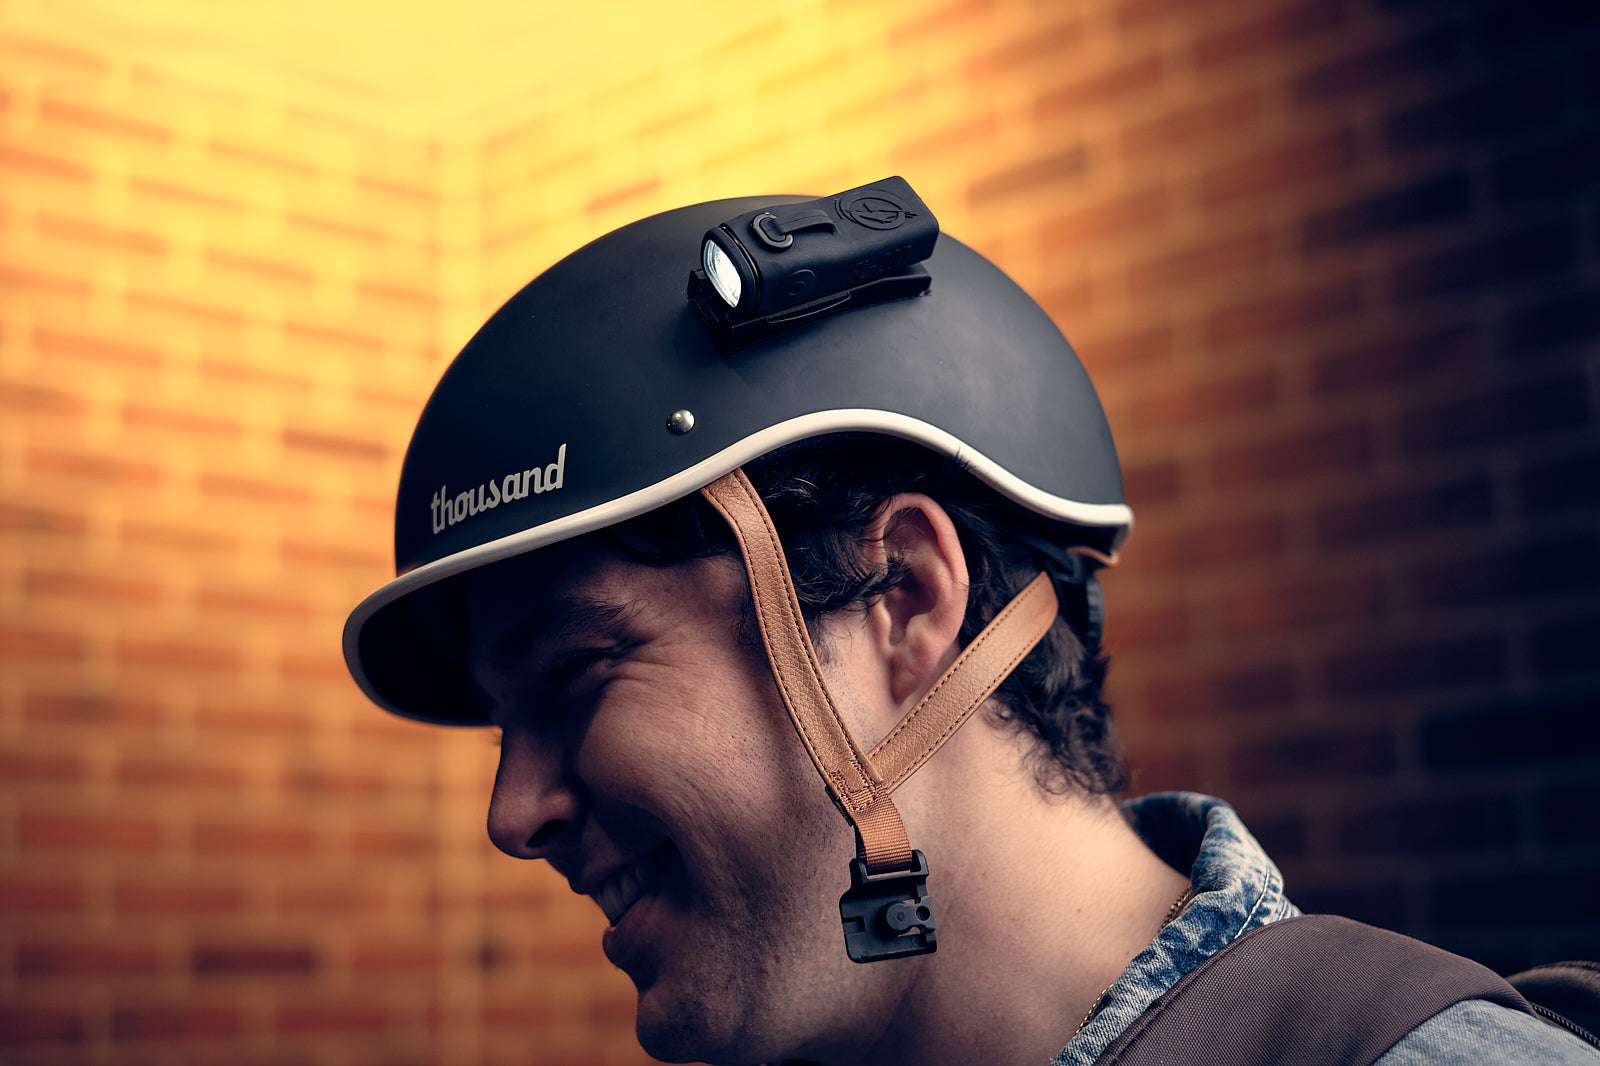 illuminated bike helmet